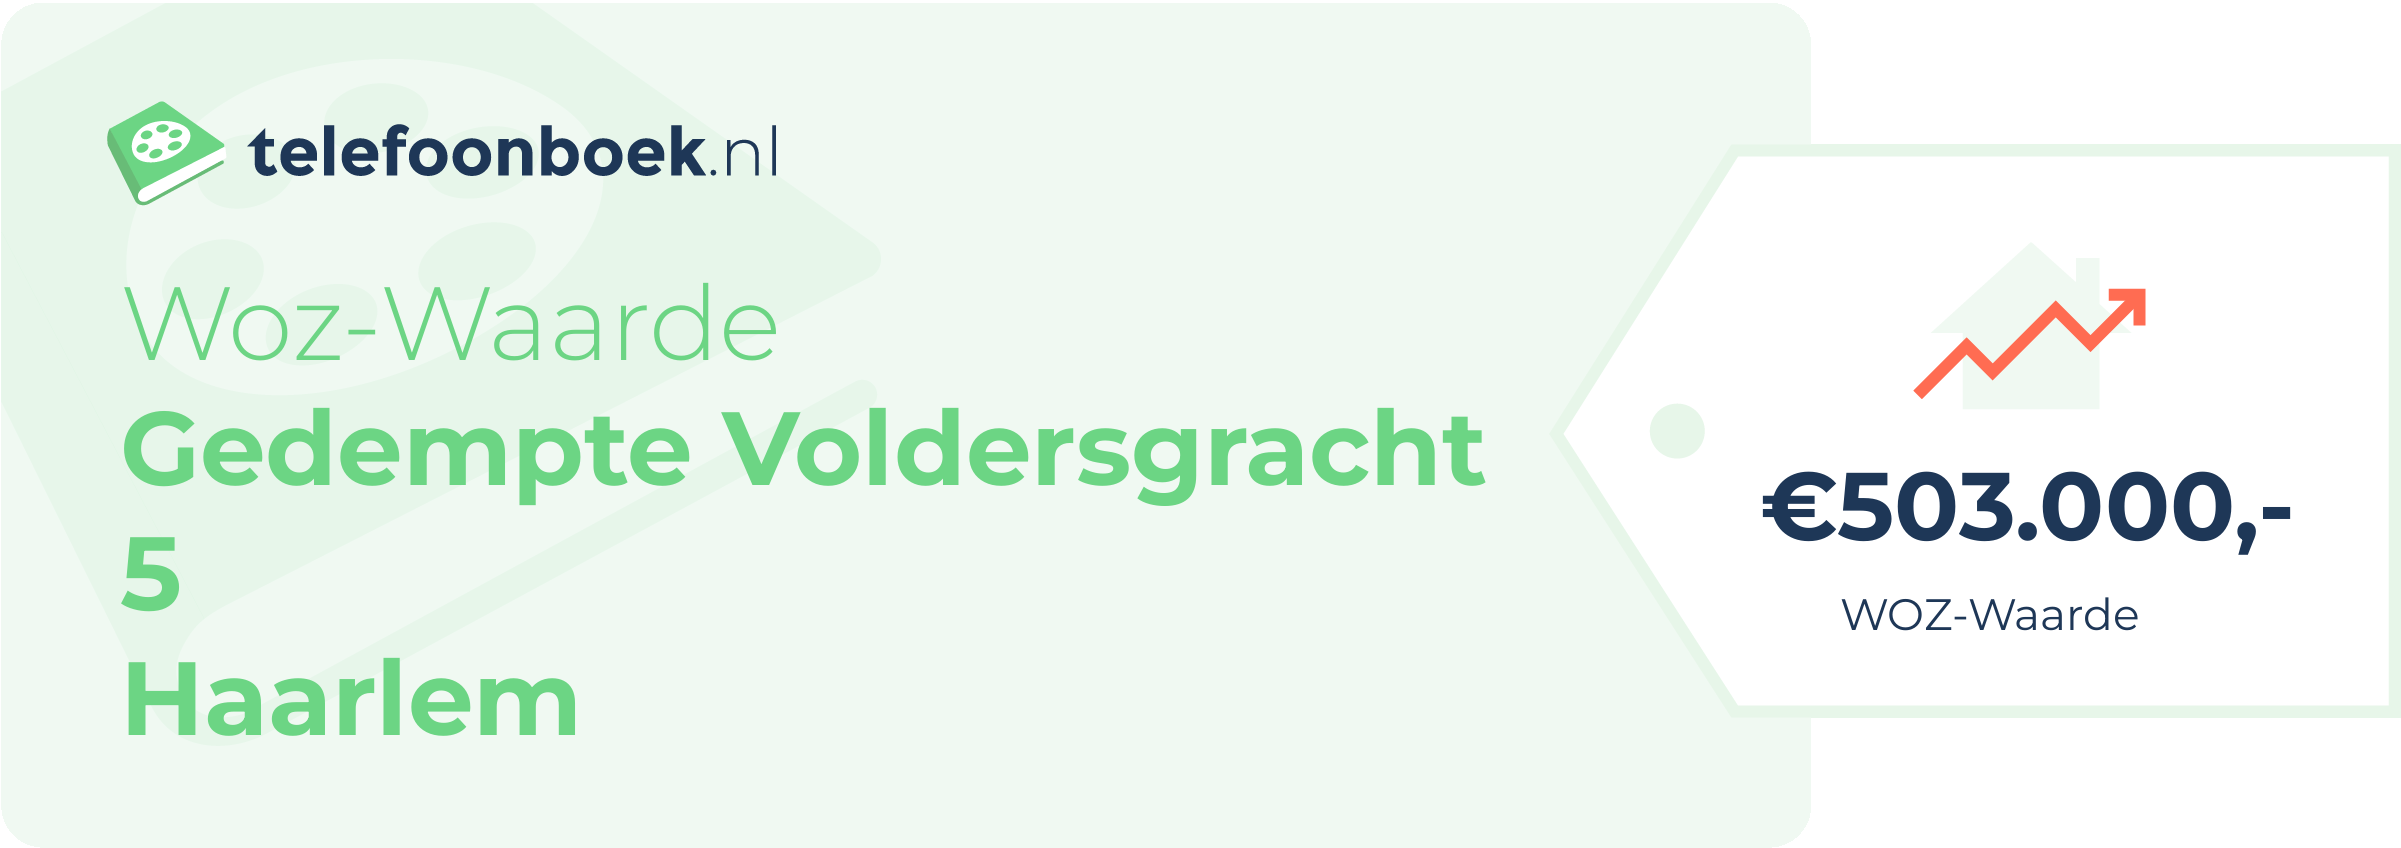 WOZ-waarde Gedempte Voldersgracht 5 Haarlem